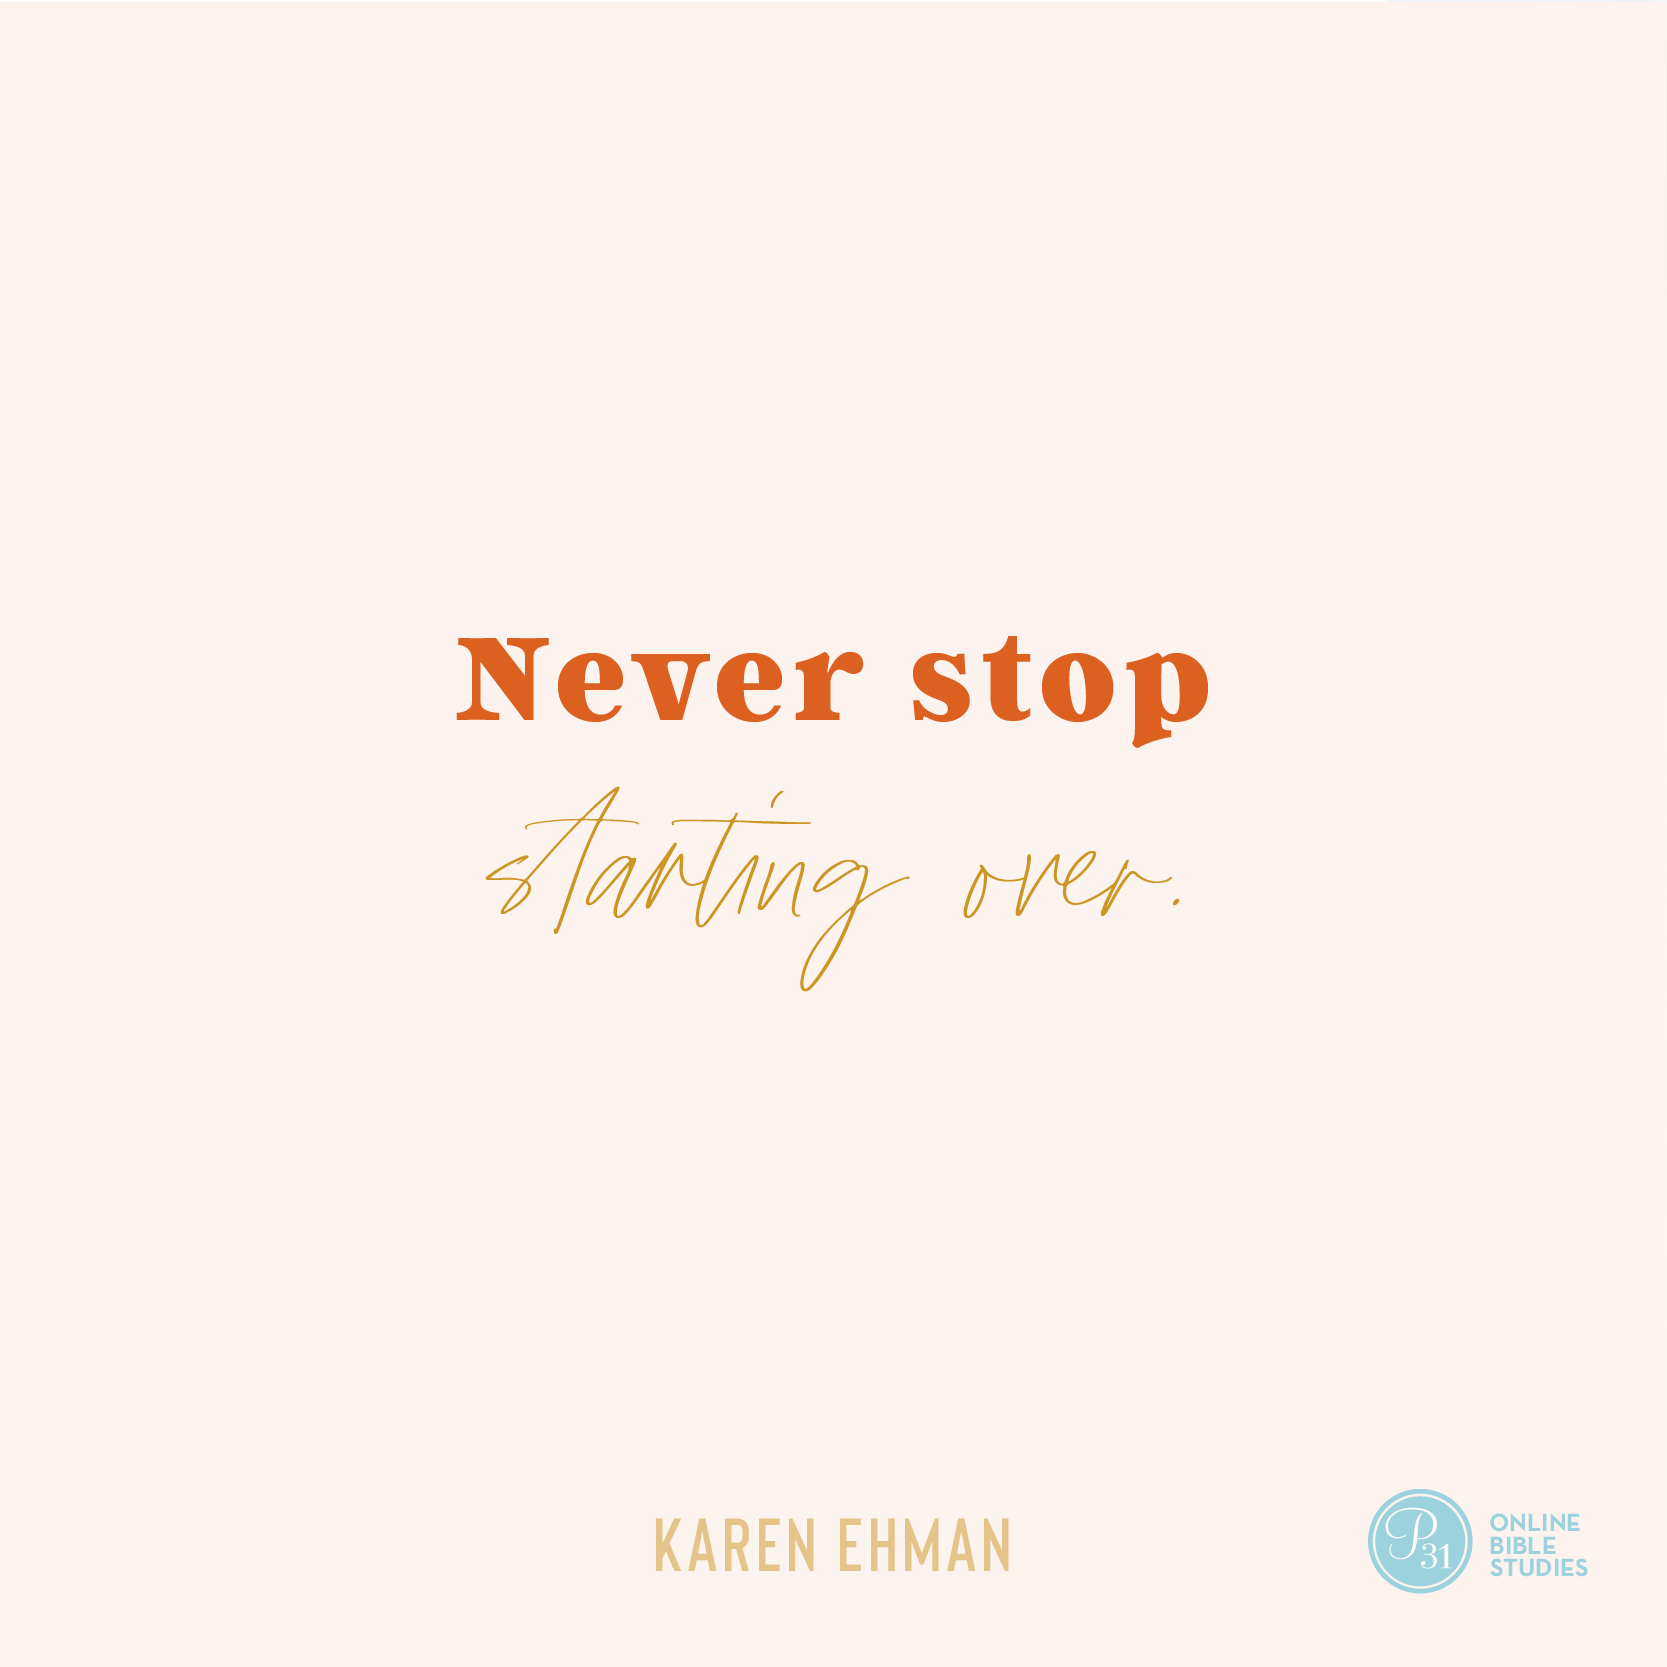  "Never Stop Starting Over." - Karen Ehman  #KeepShowingUpBook | Proverbs 31 Online Bible Studies Week 5 #P31OBS